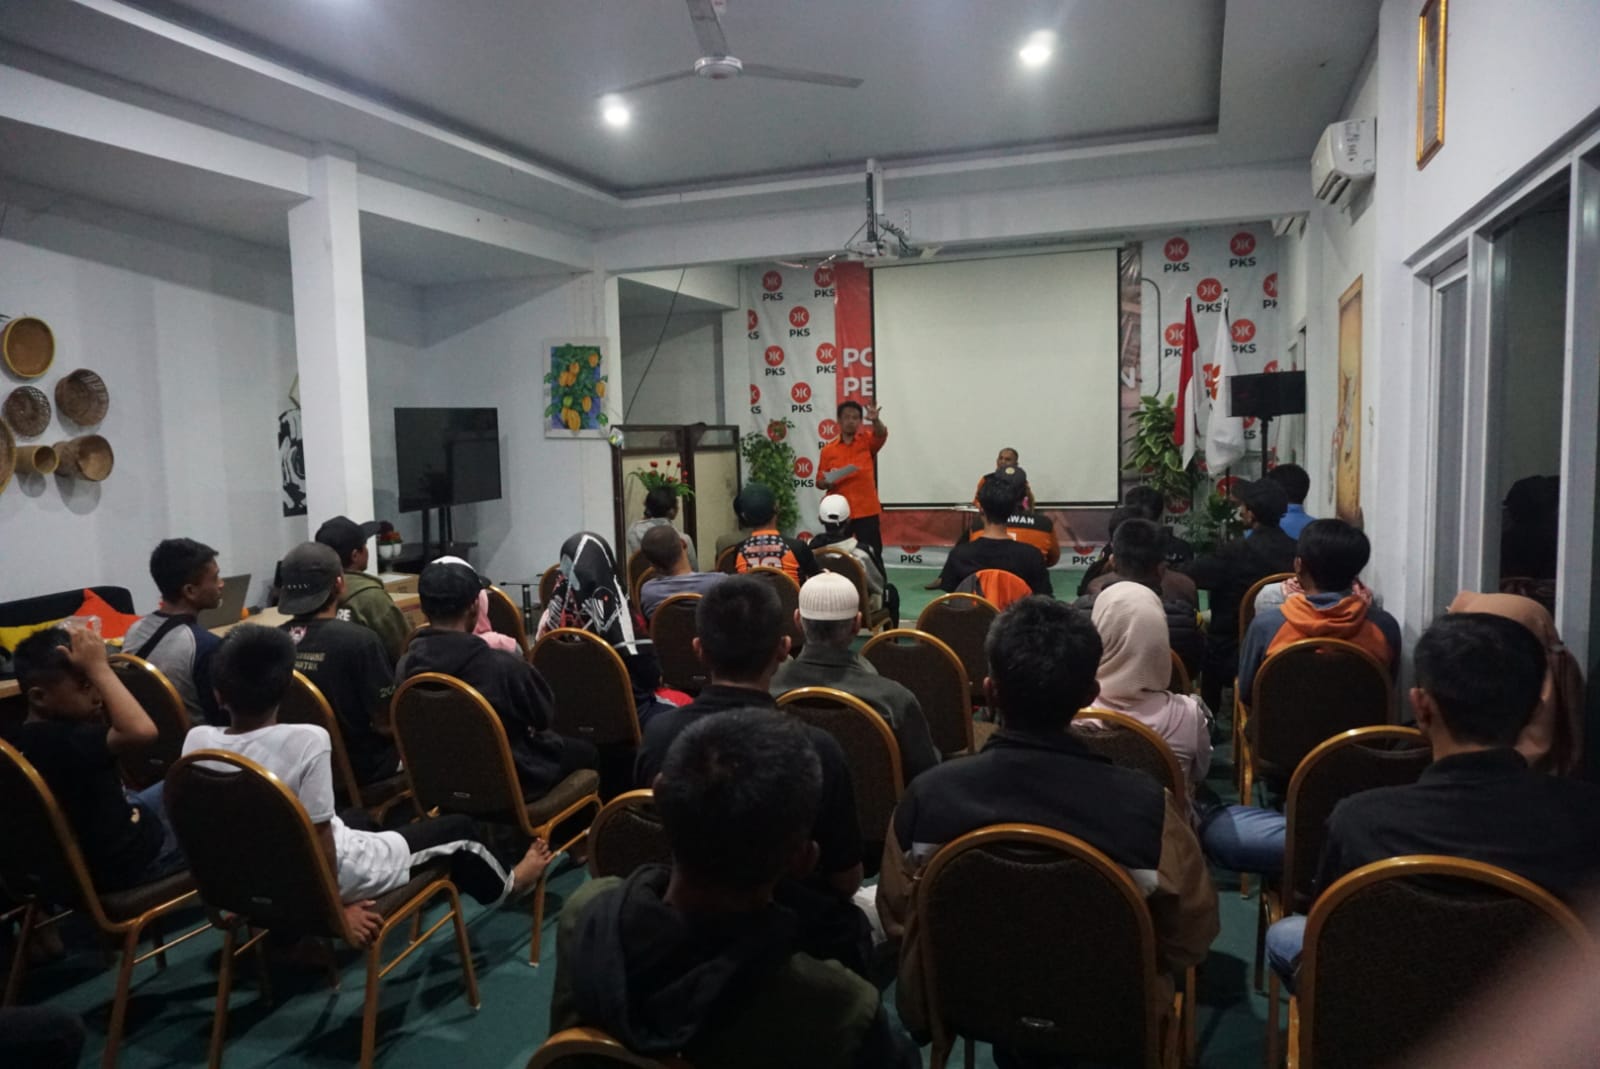 PKS Cianjur Open Recruitment Relawan, Puluhan Orang Daftar dan Ikuti Pelatihan Gelombang Pertama